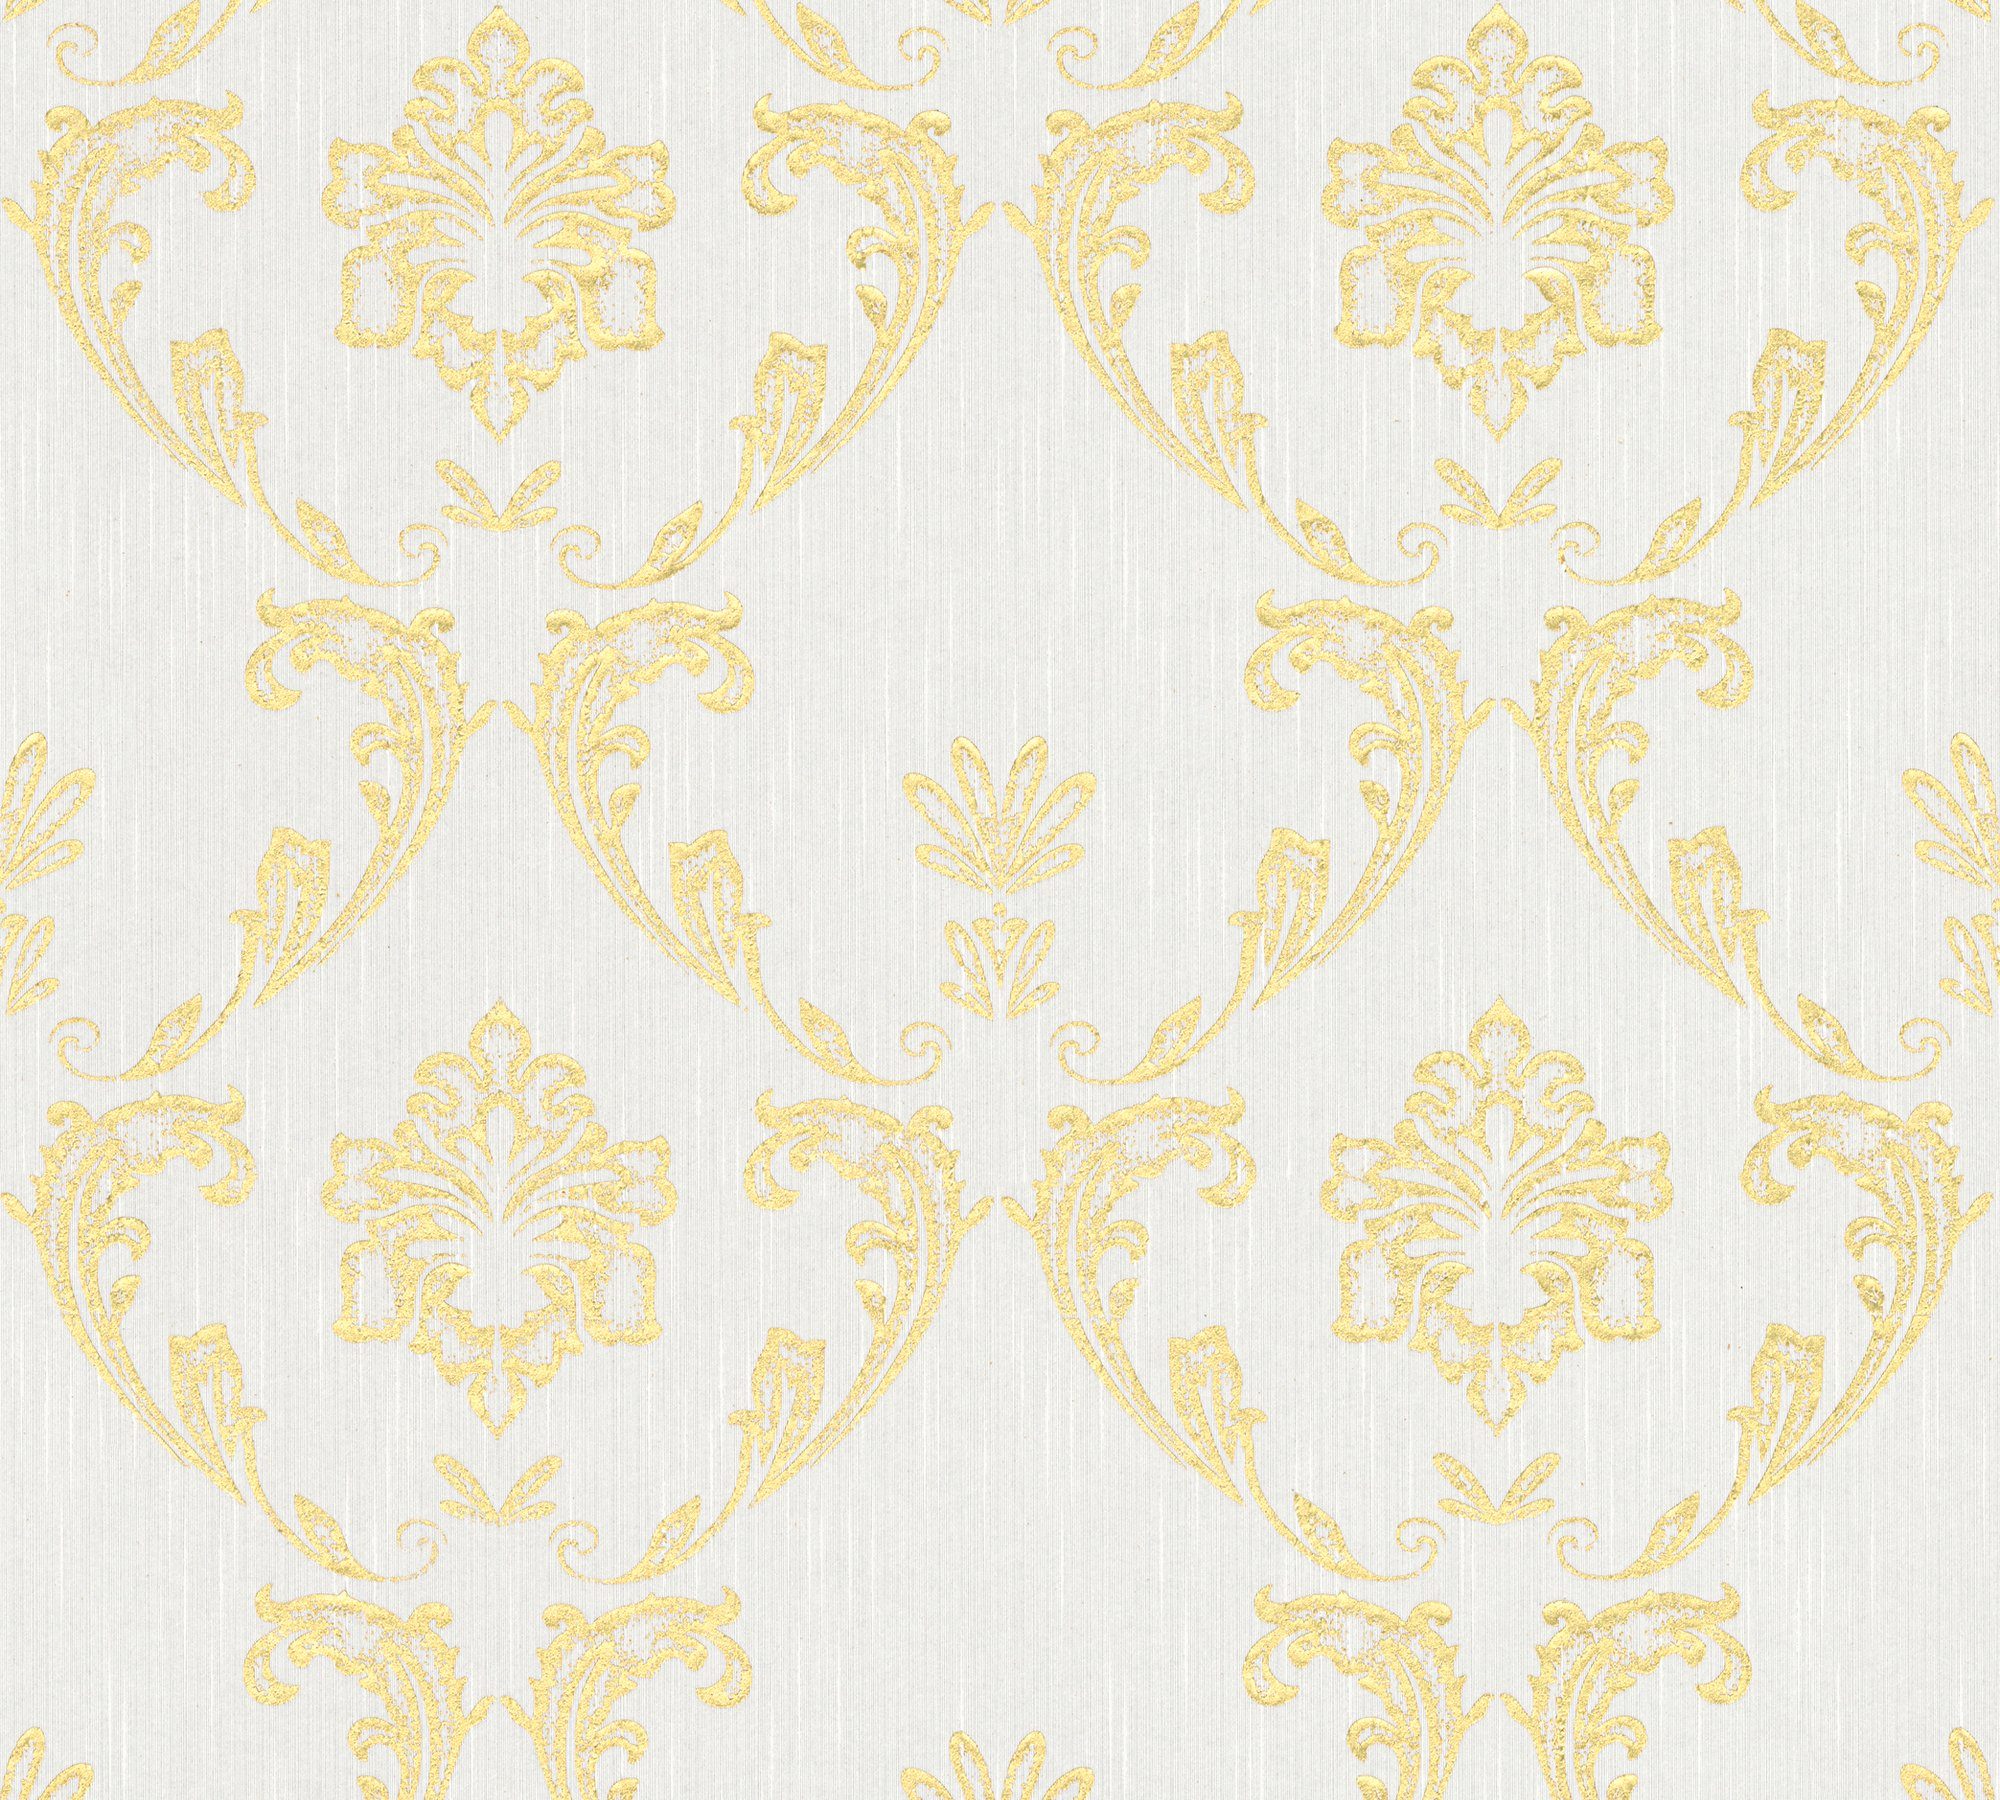 Barock Textiltapete Création Ornament A.S. Metallic Tapete Paper Barock, samtig, Silk, Architects glänzend, matt, gold/weiß